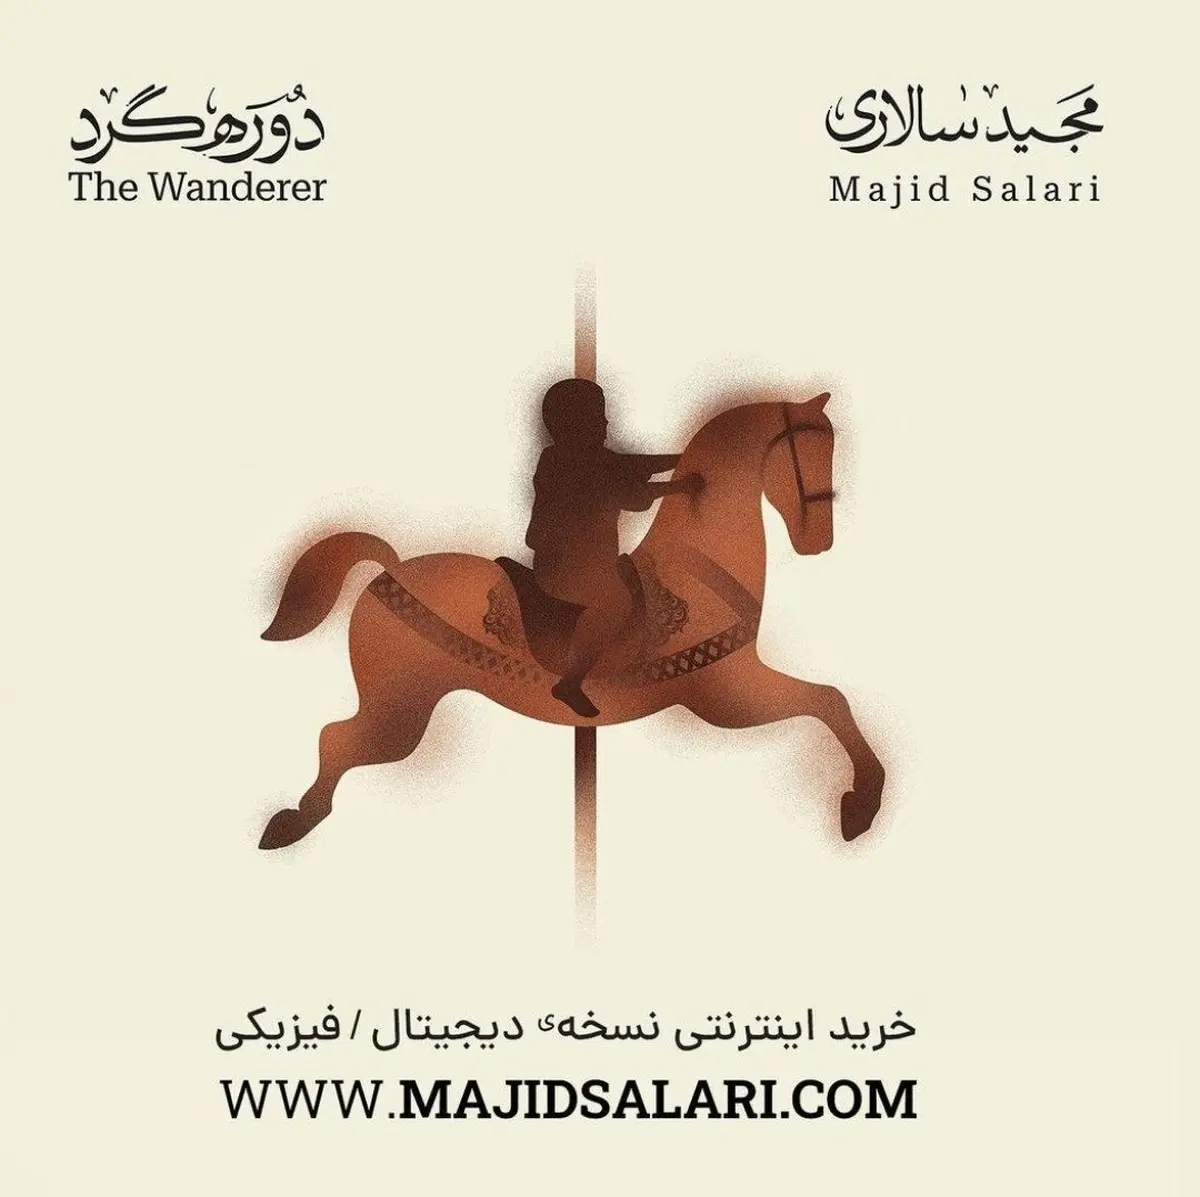 فروش آنلاین آلبوم مجید سالاری | آلبوم «دوره‌گرد» مجید سالاری رونمایی شد